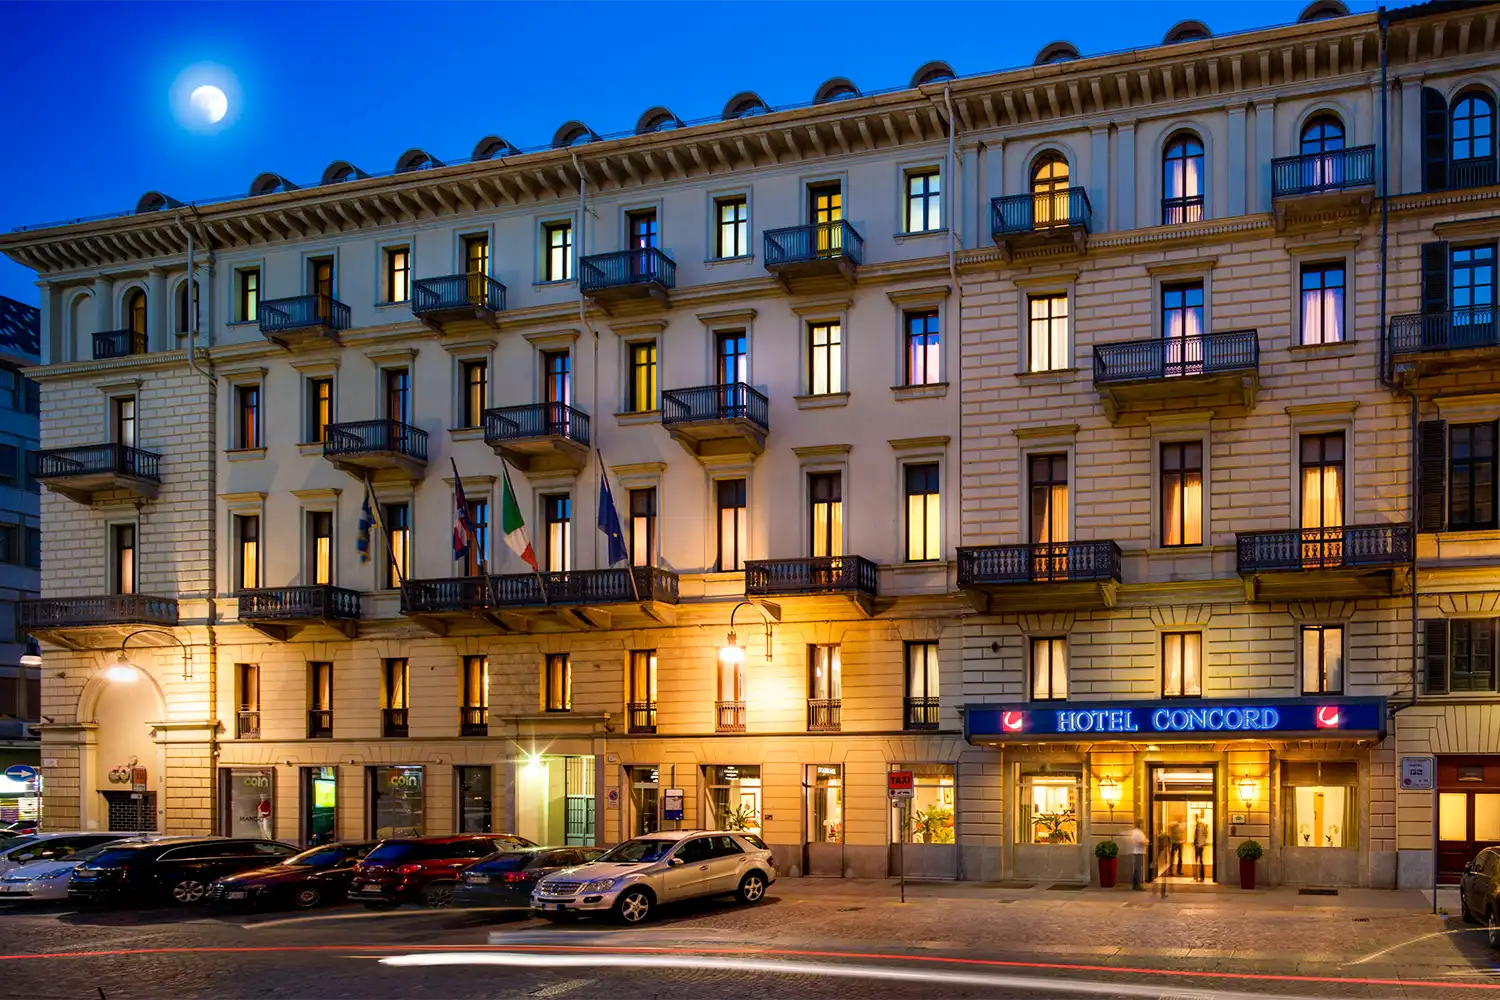 Hotel Concorde in Turin